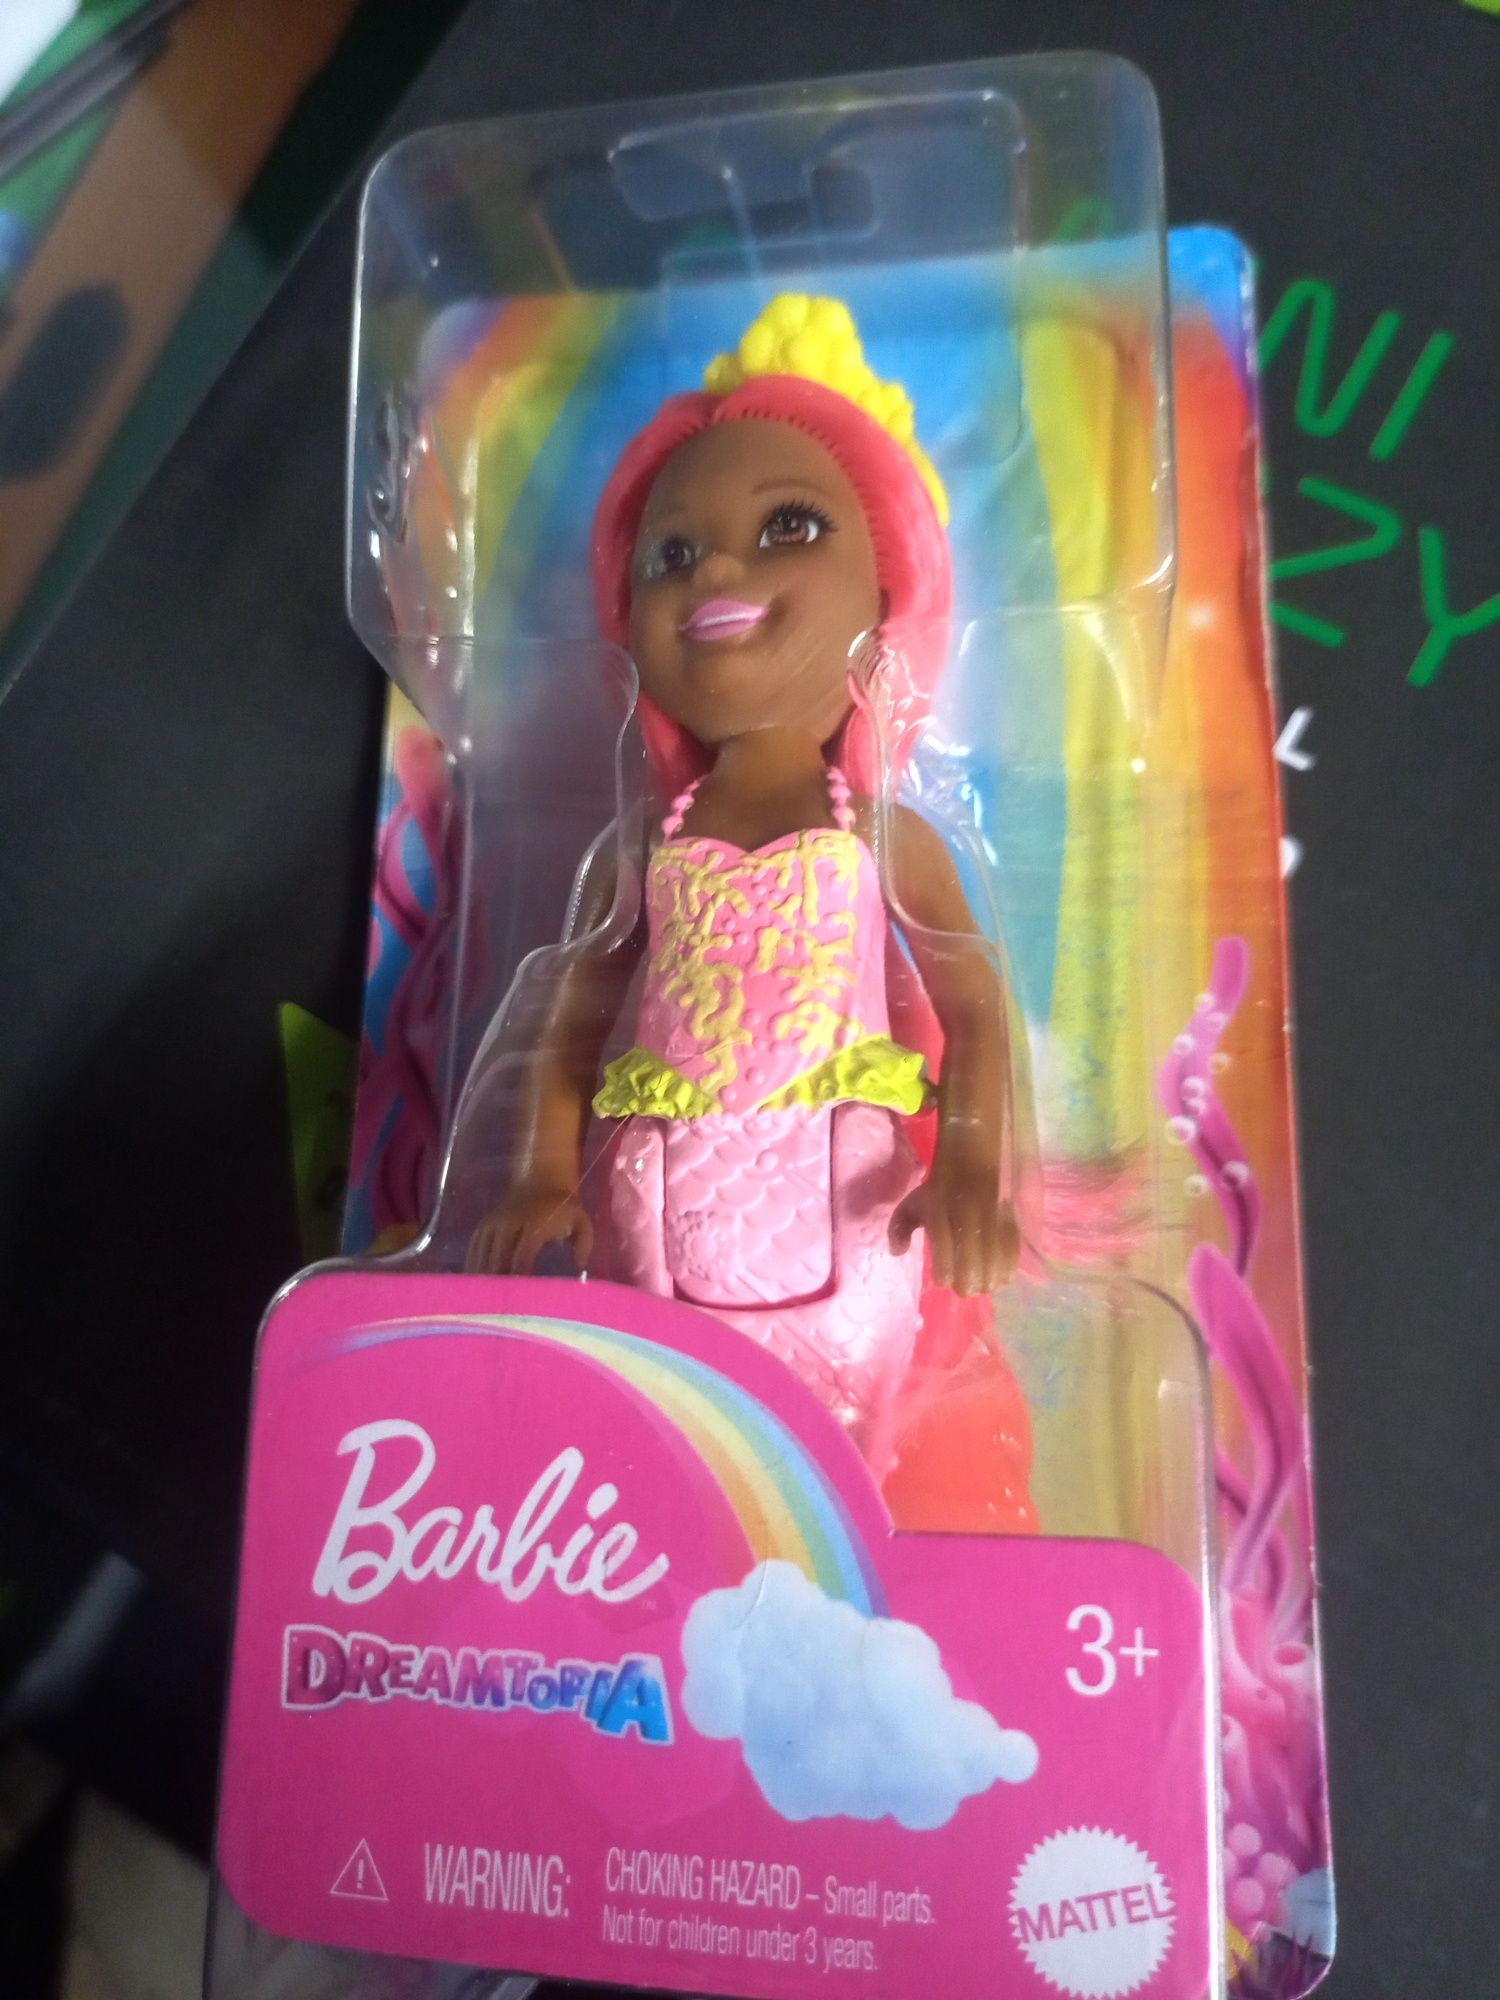 Nowa lalka barbie